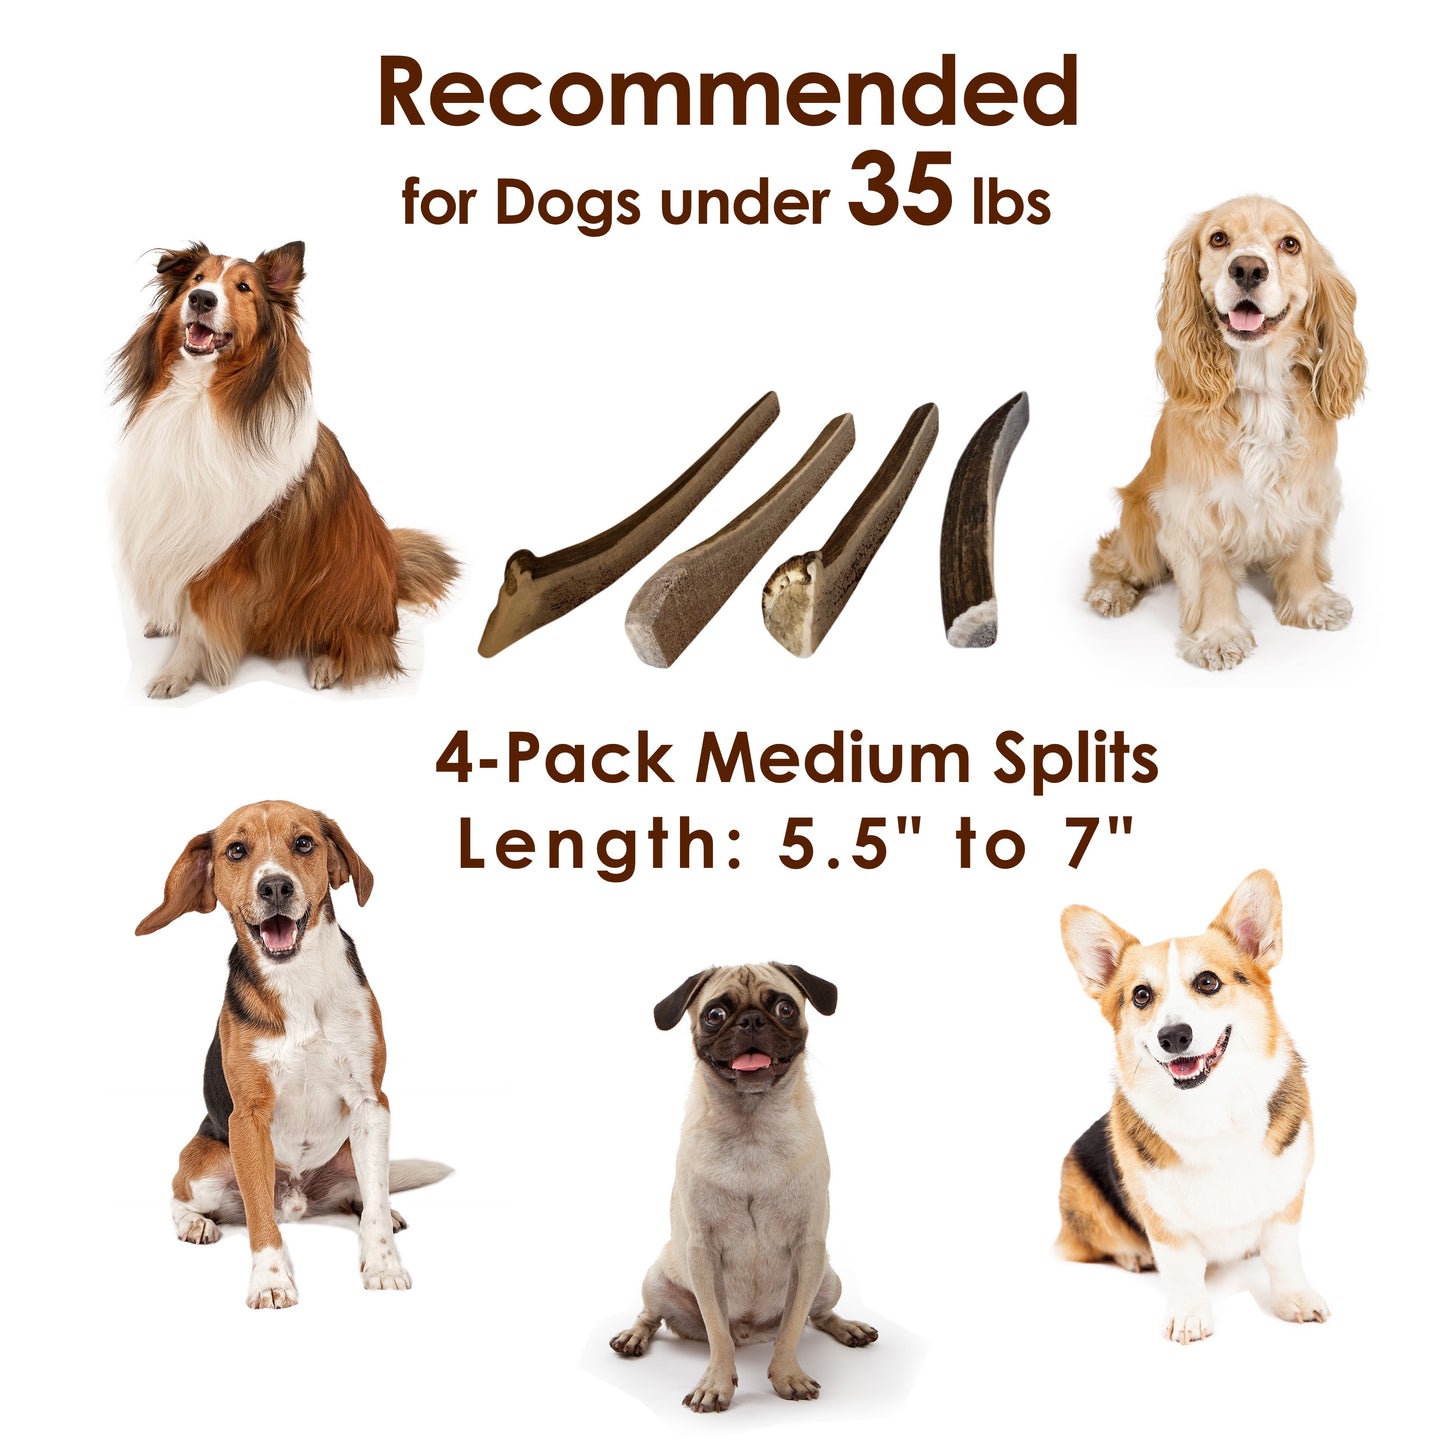 Deluxe Naturals 4-Pack Elk Antler Dog Chew - Medium Split